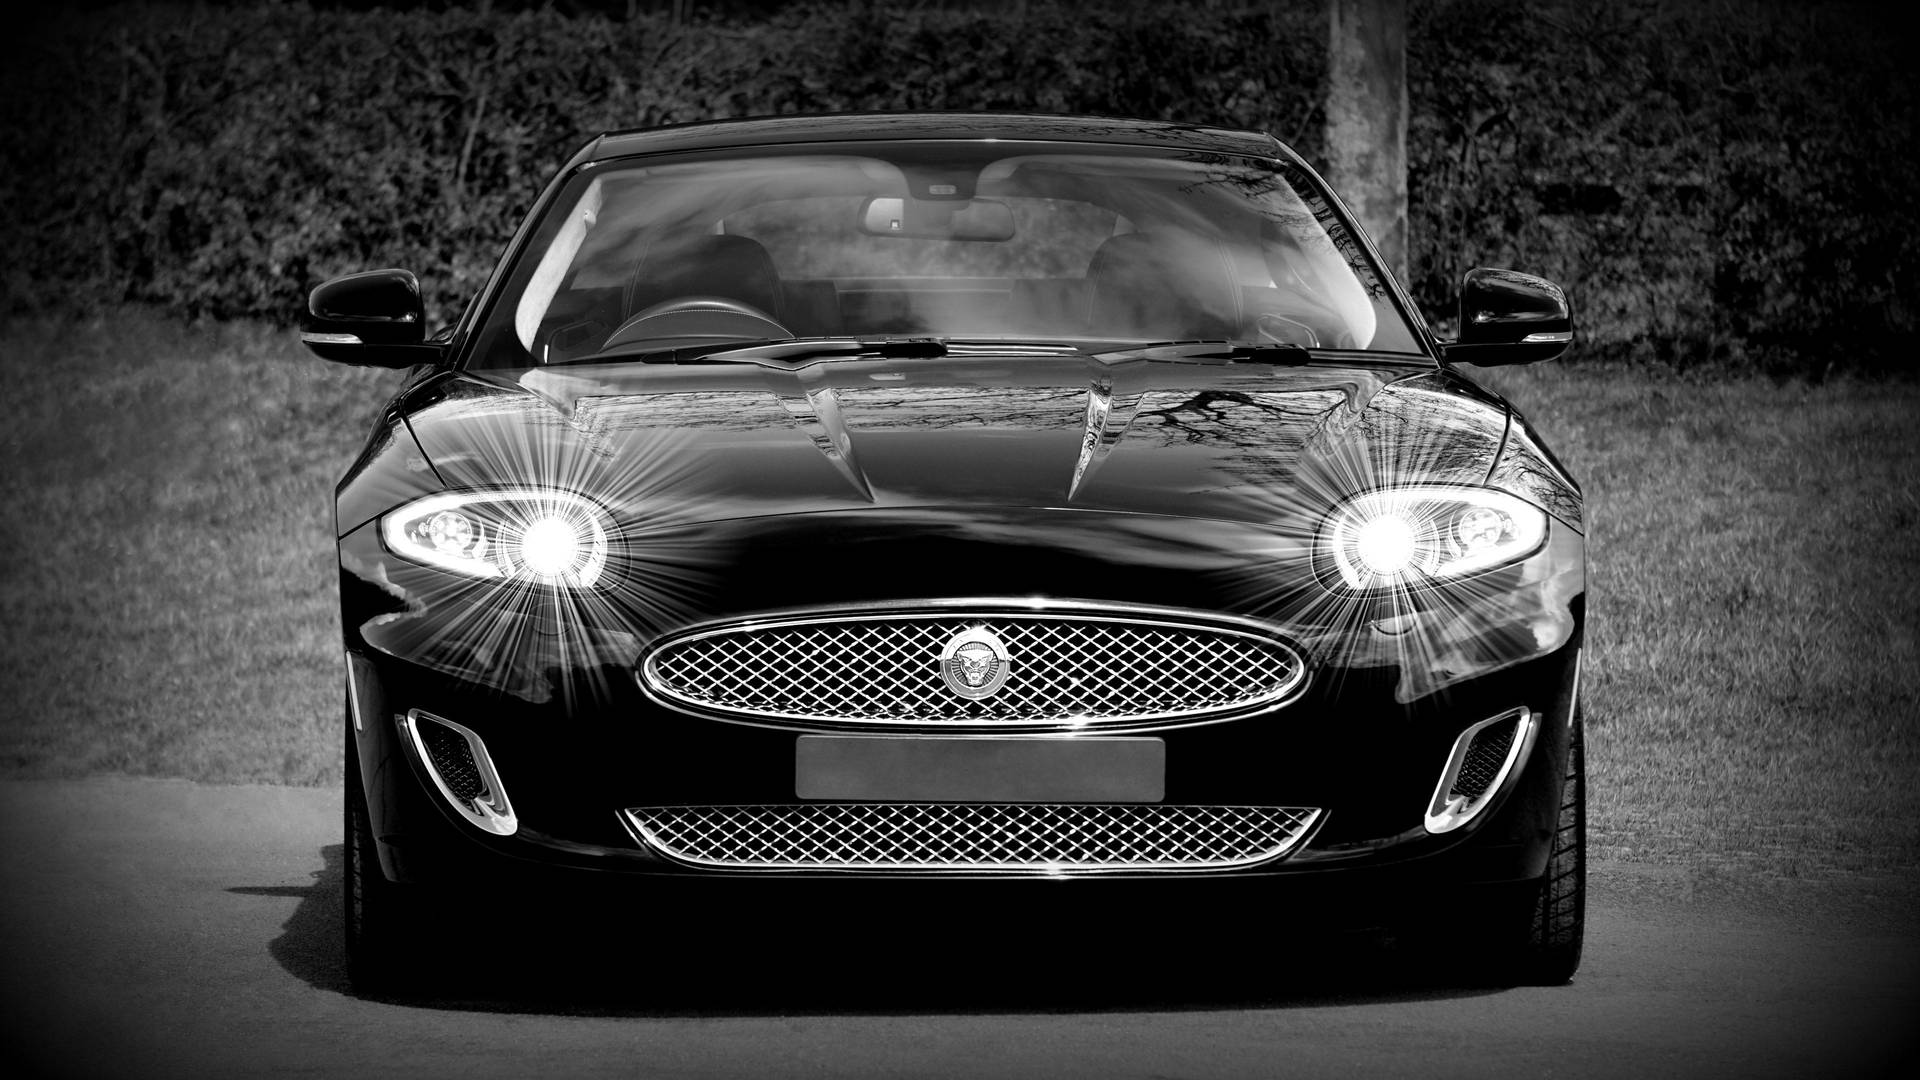 Dramatic Monochrome Jaguar Car Background